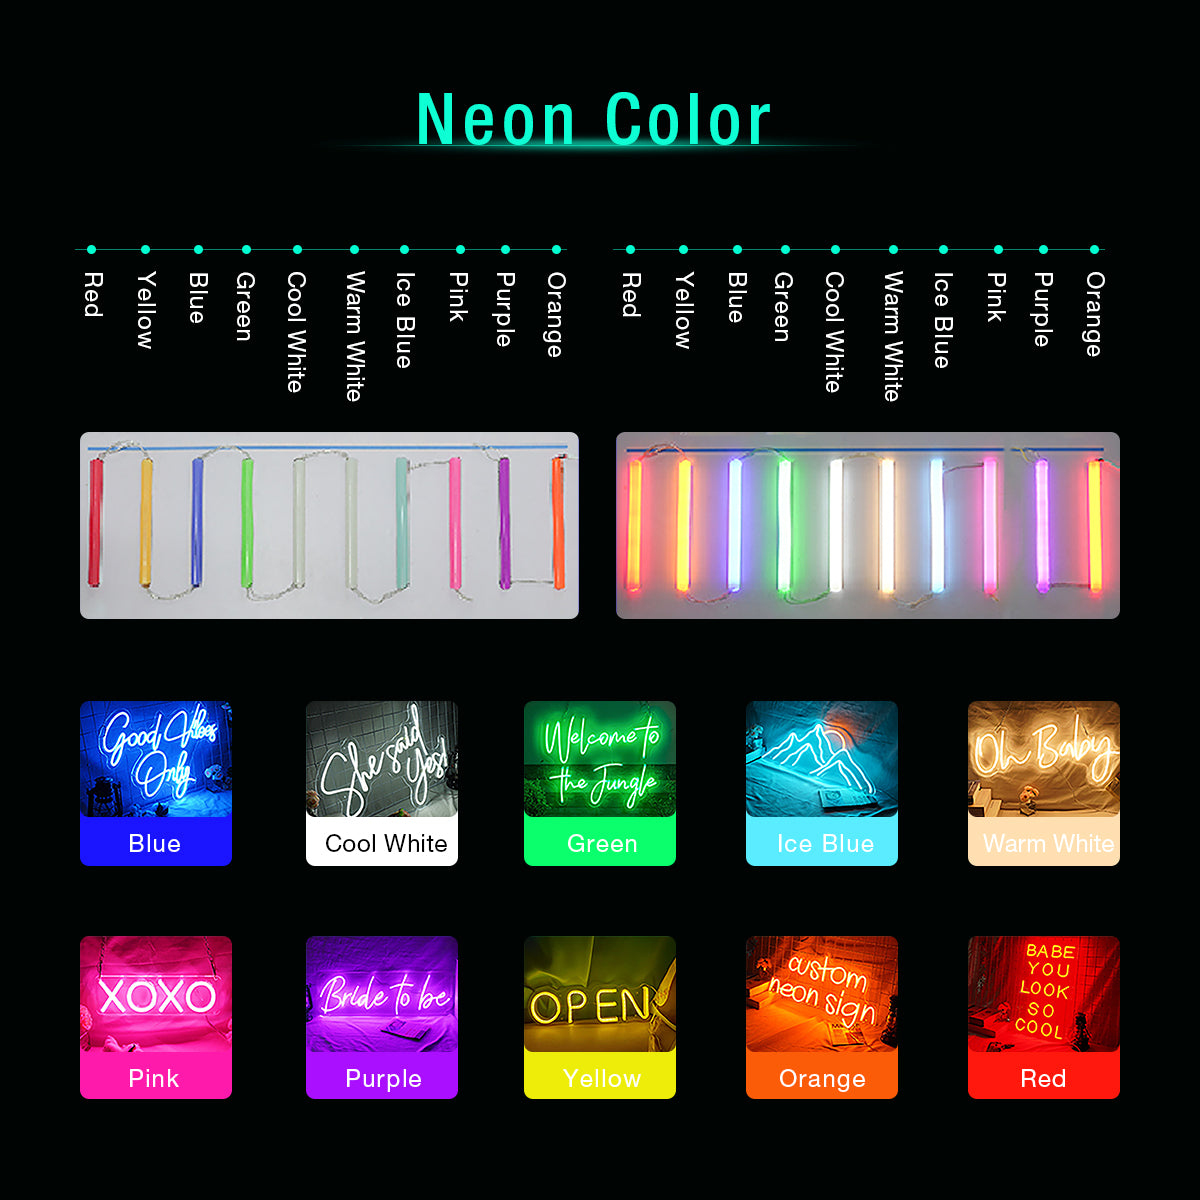 NEONIP-100% Handmade Lovely Cat LED Neon Sign